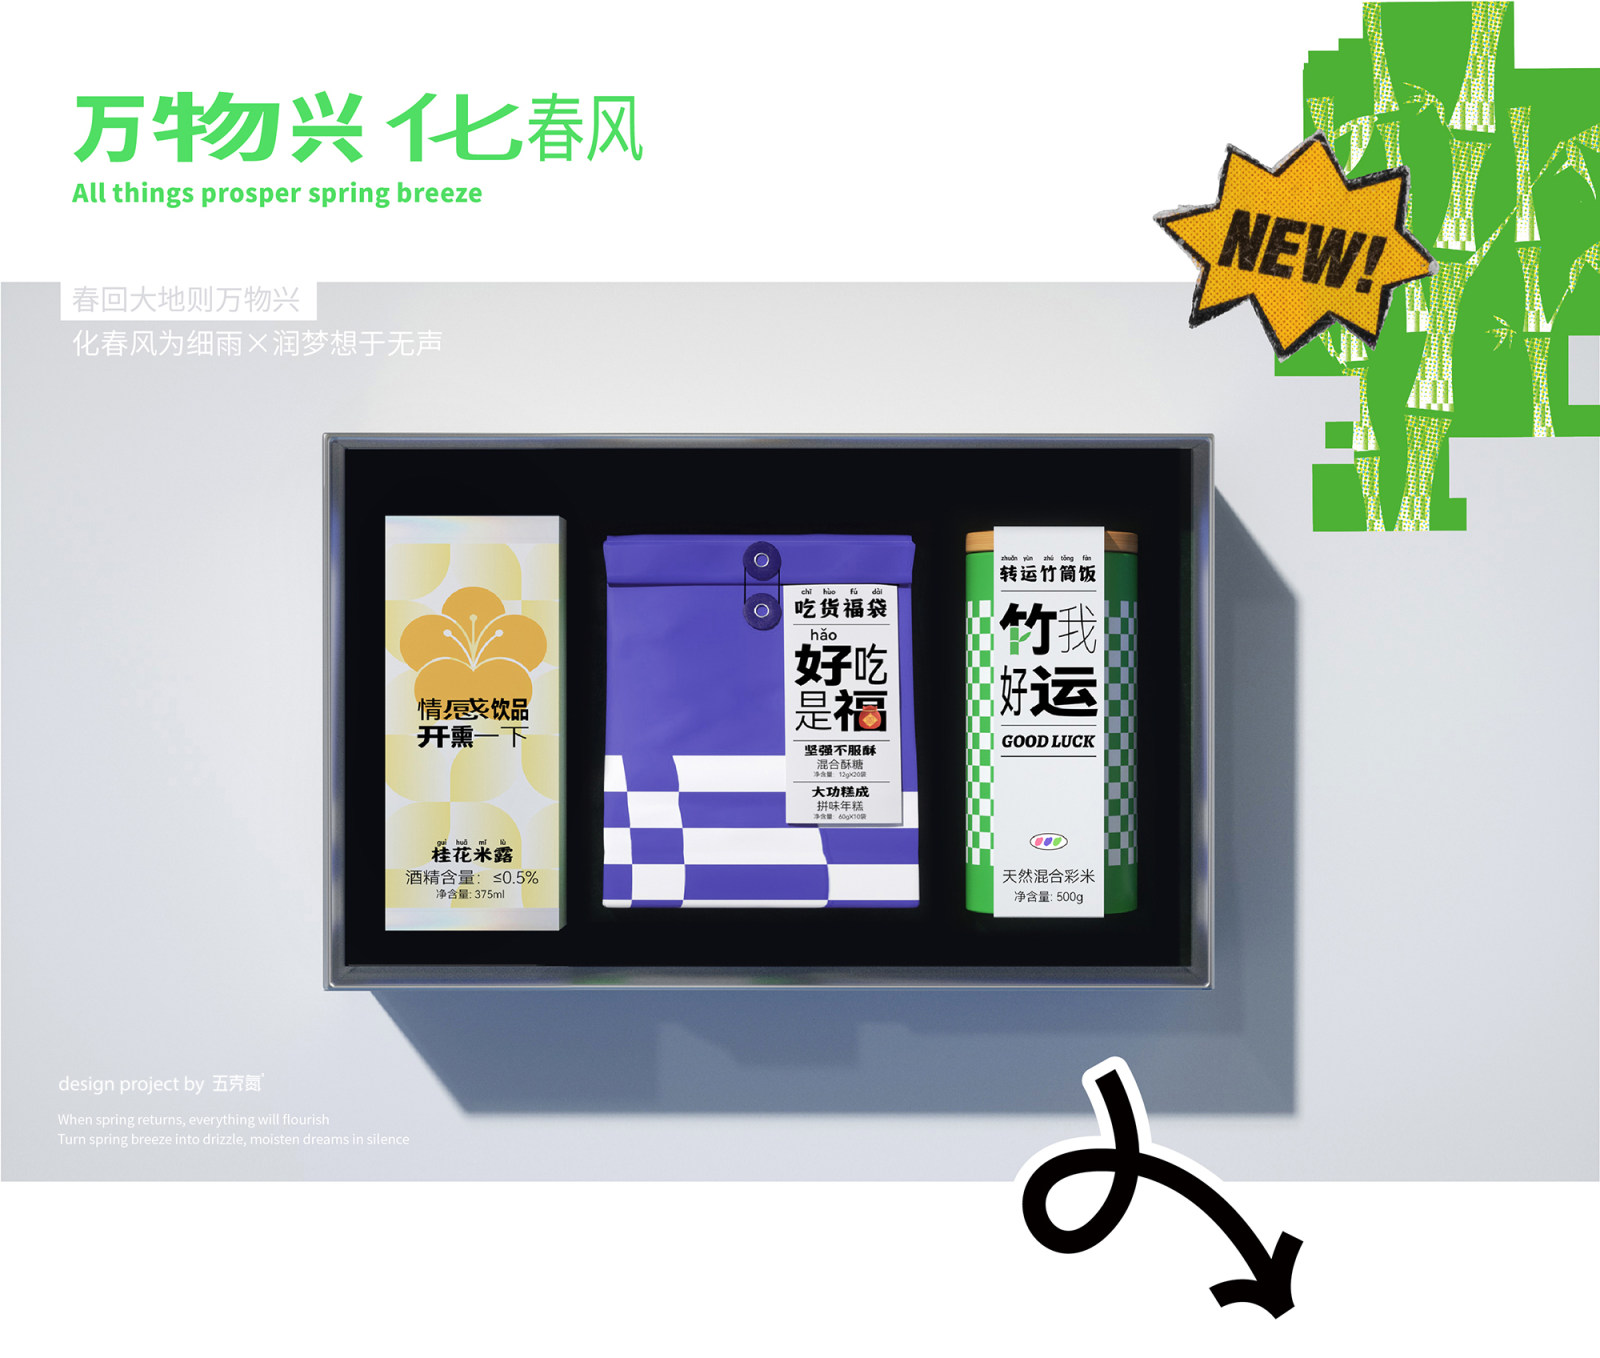 八十八仓2023→新年pin礼盒包装设计